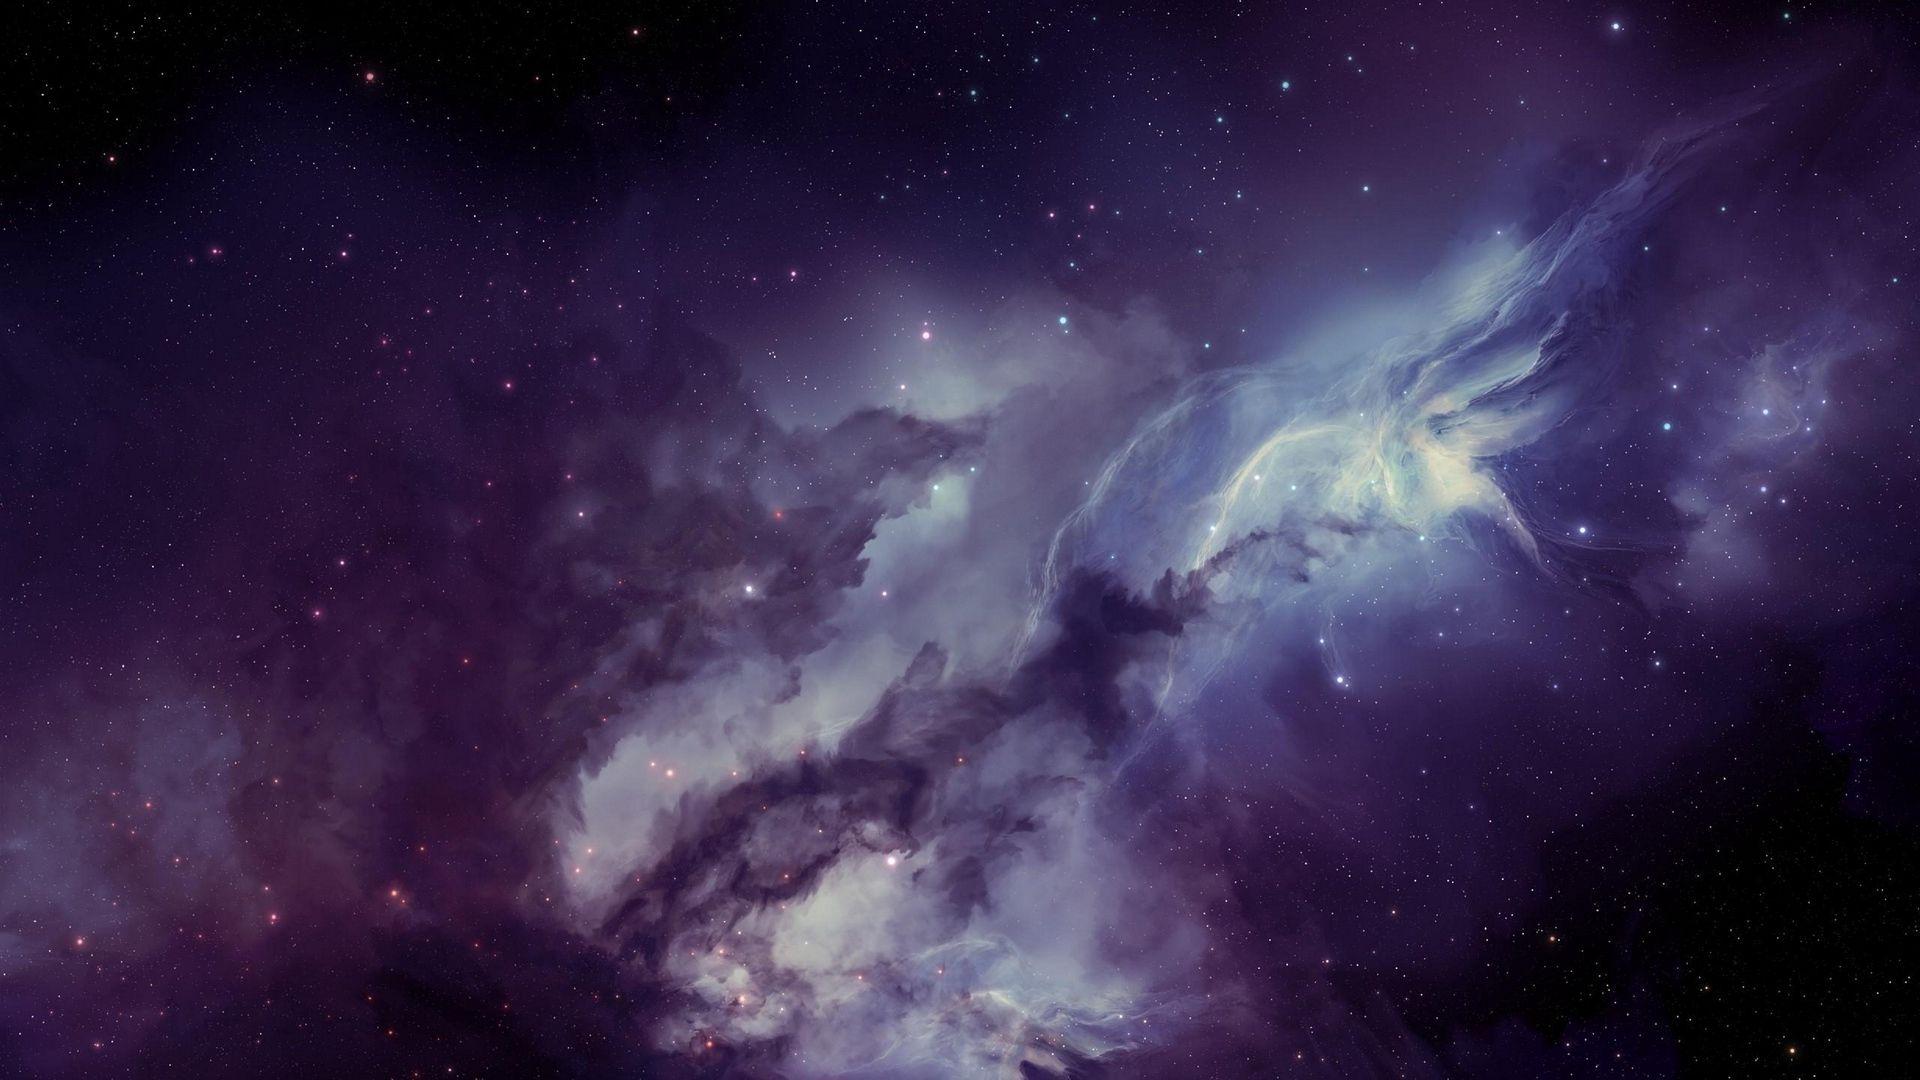 Download wallpaper 1920x1080 galaxy, nebula, blurring, stars full HD